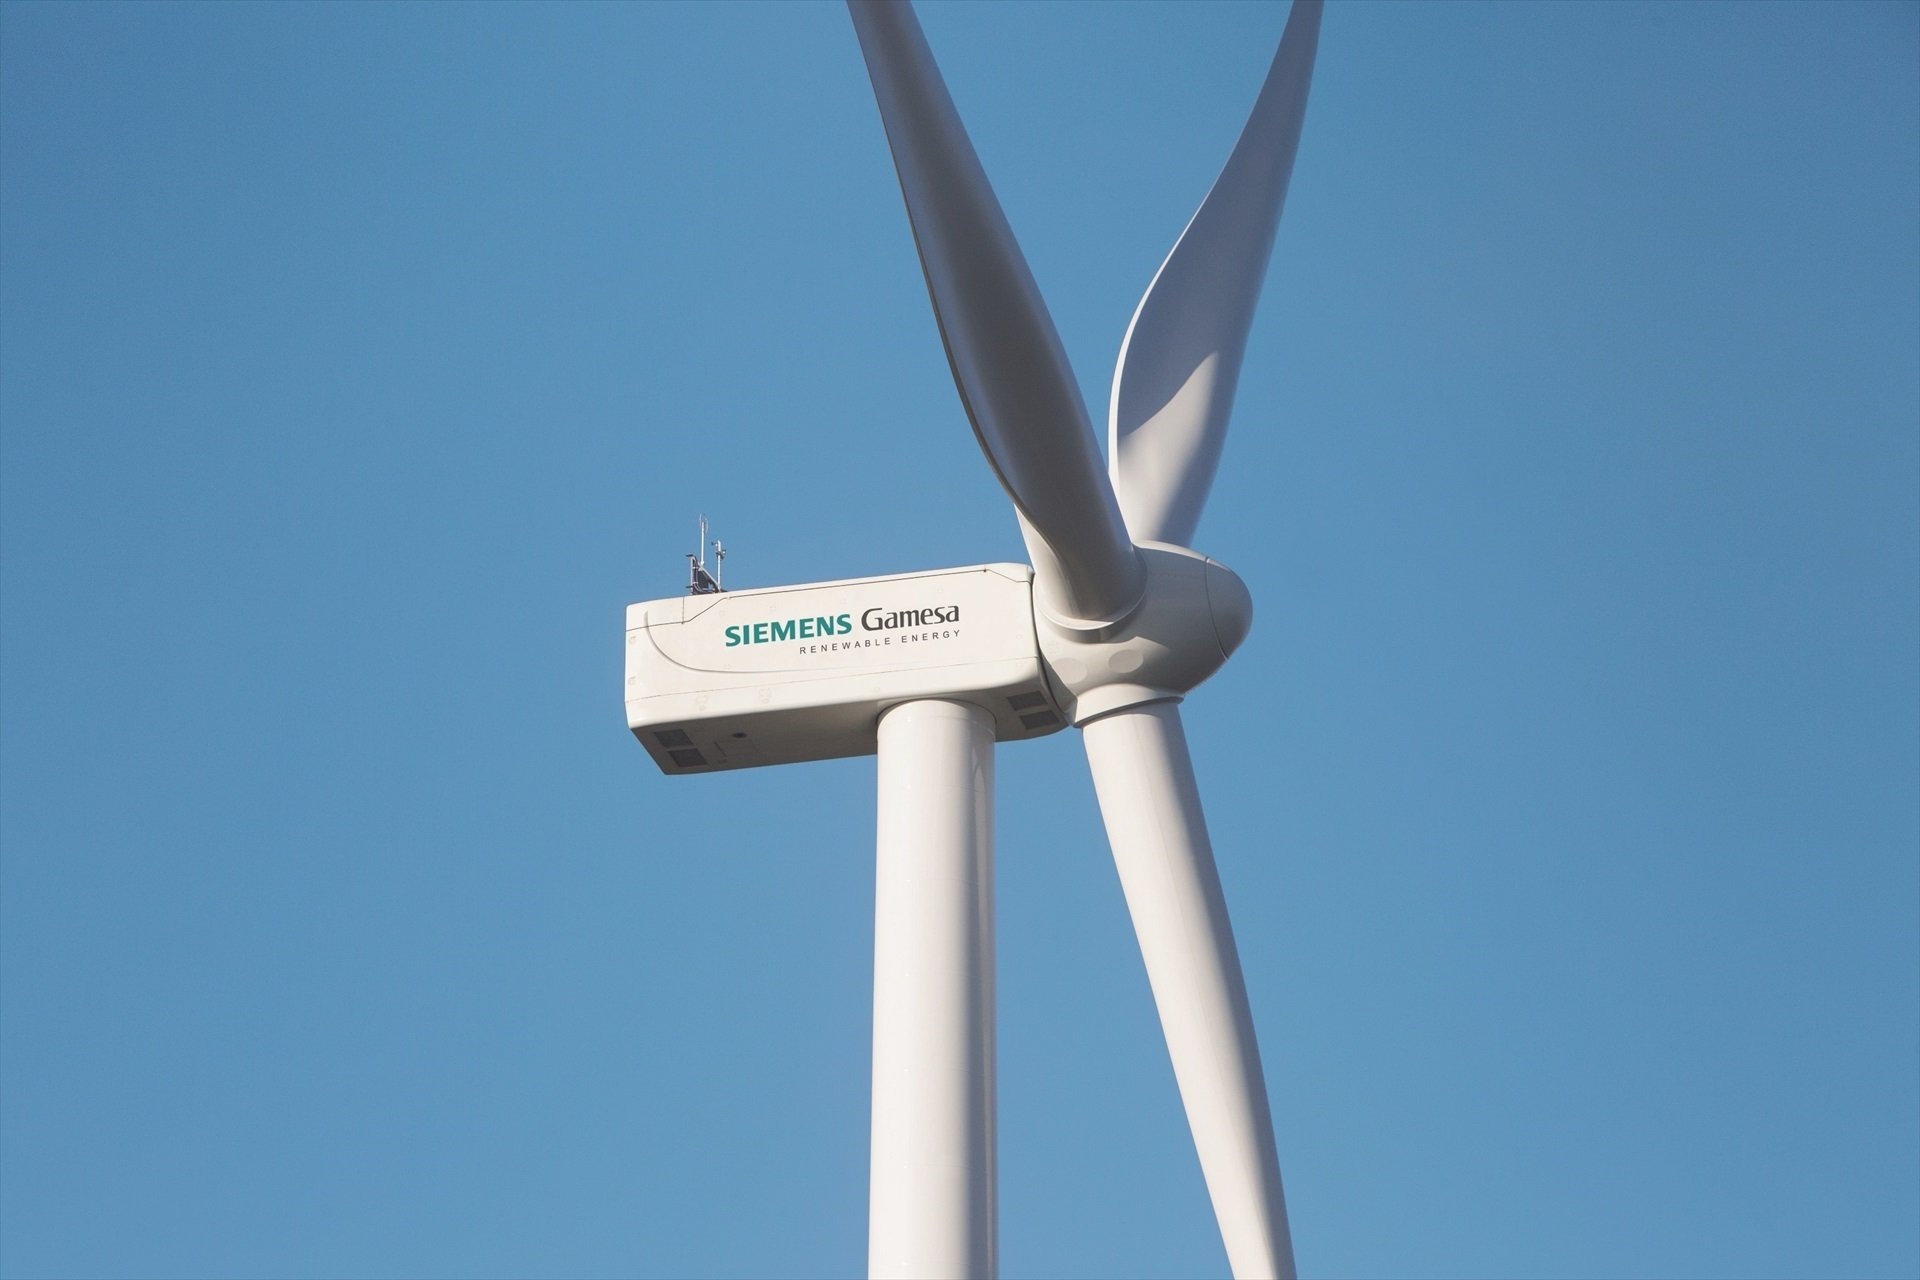 Què passarà amb Siemens Gamesa?